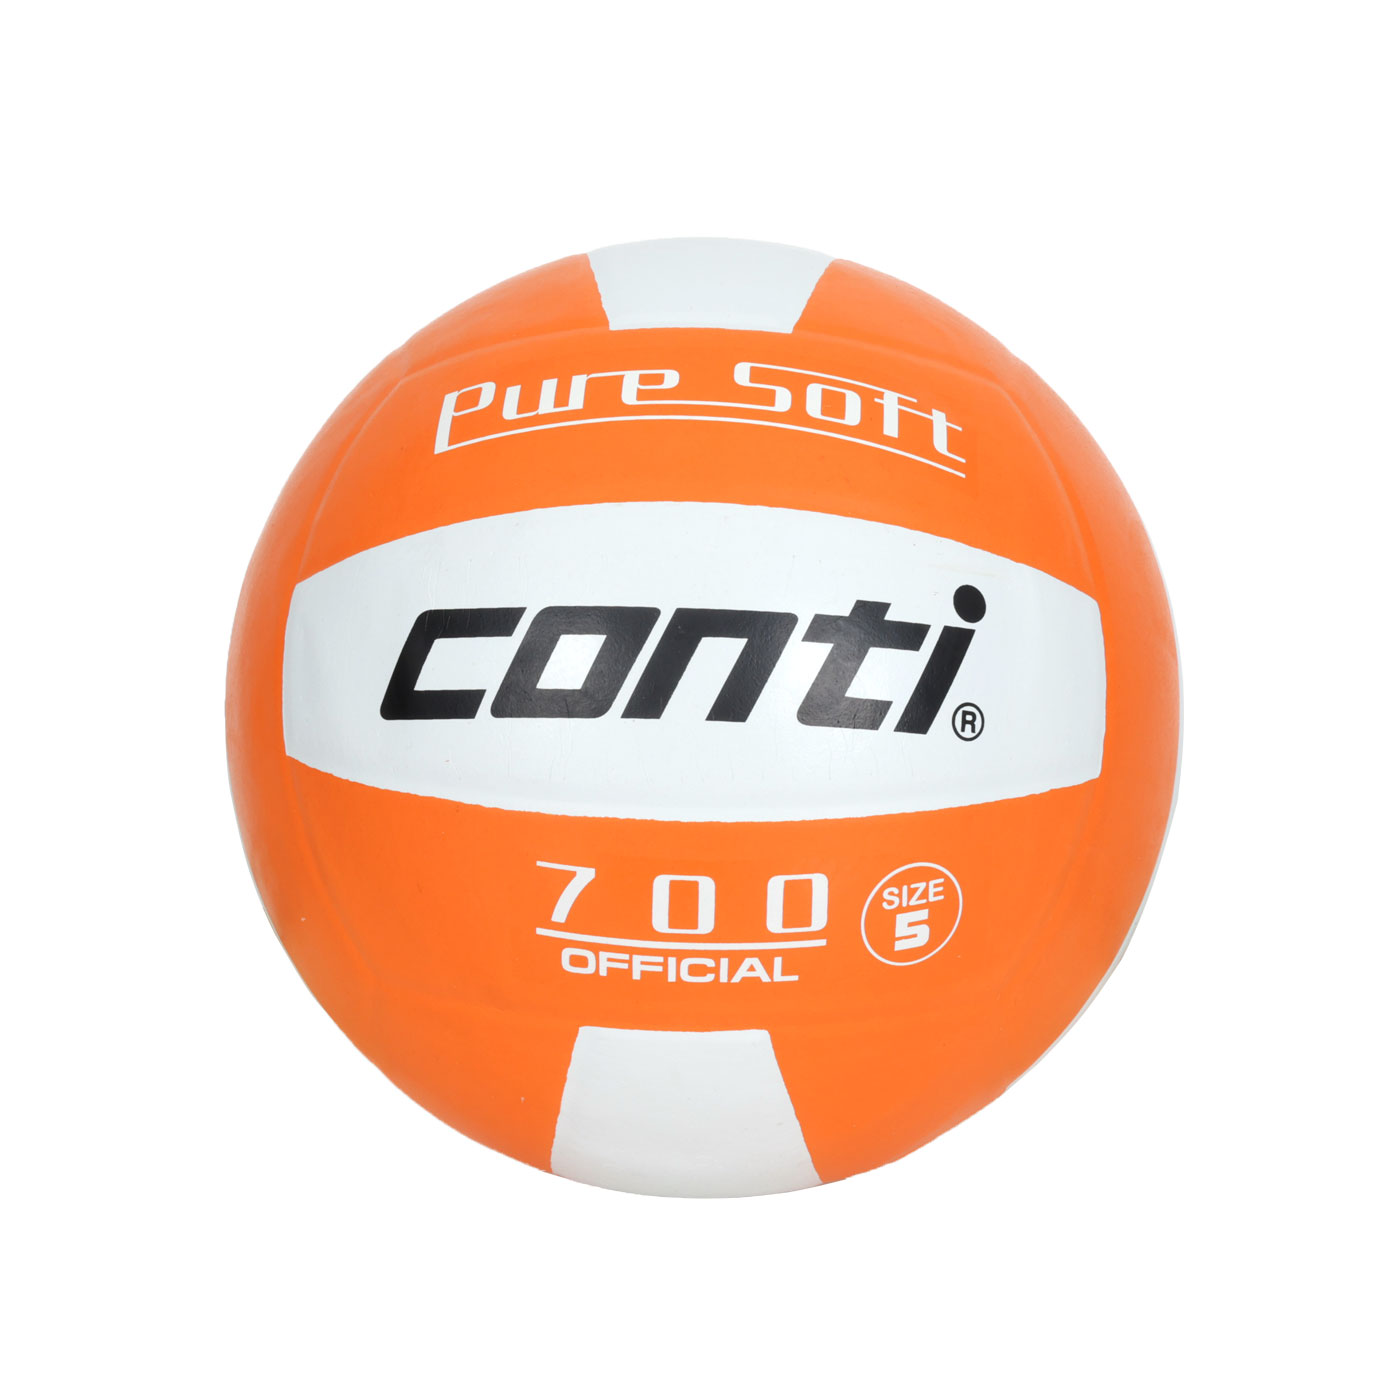 詠冠conti 5號超軟橡膠排球-雙色系列 CONTI V700-5-W0 - 橘白